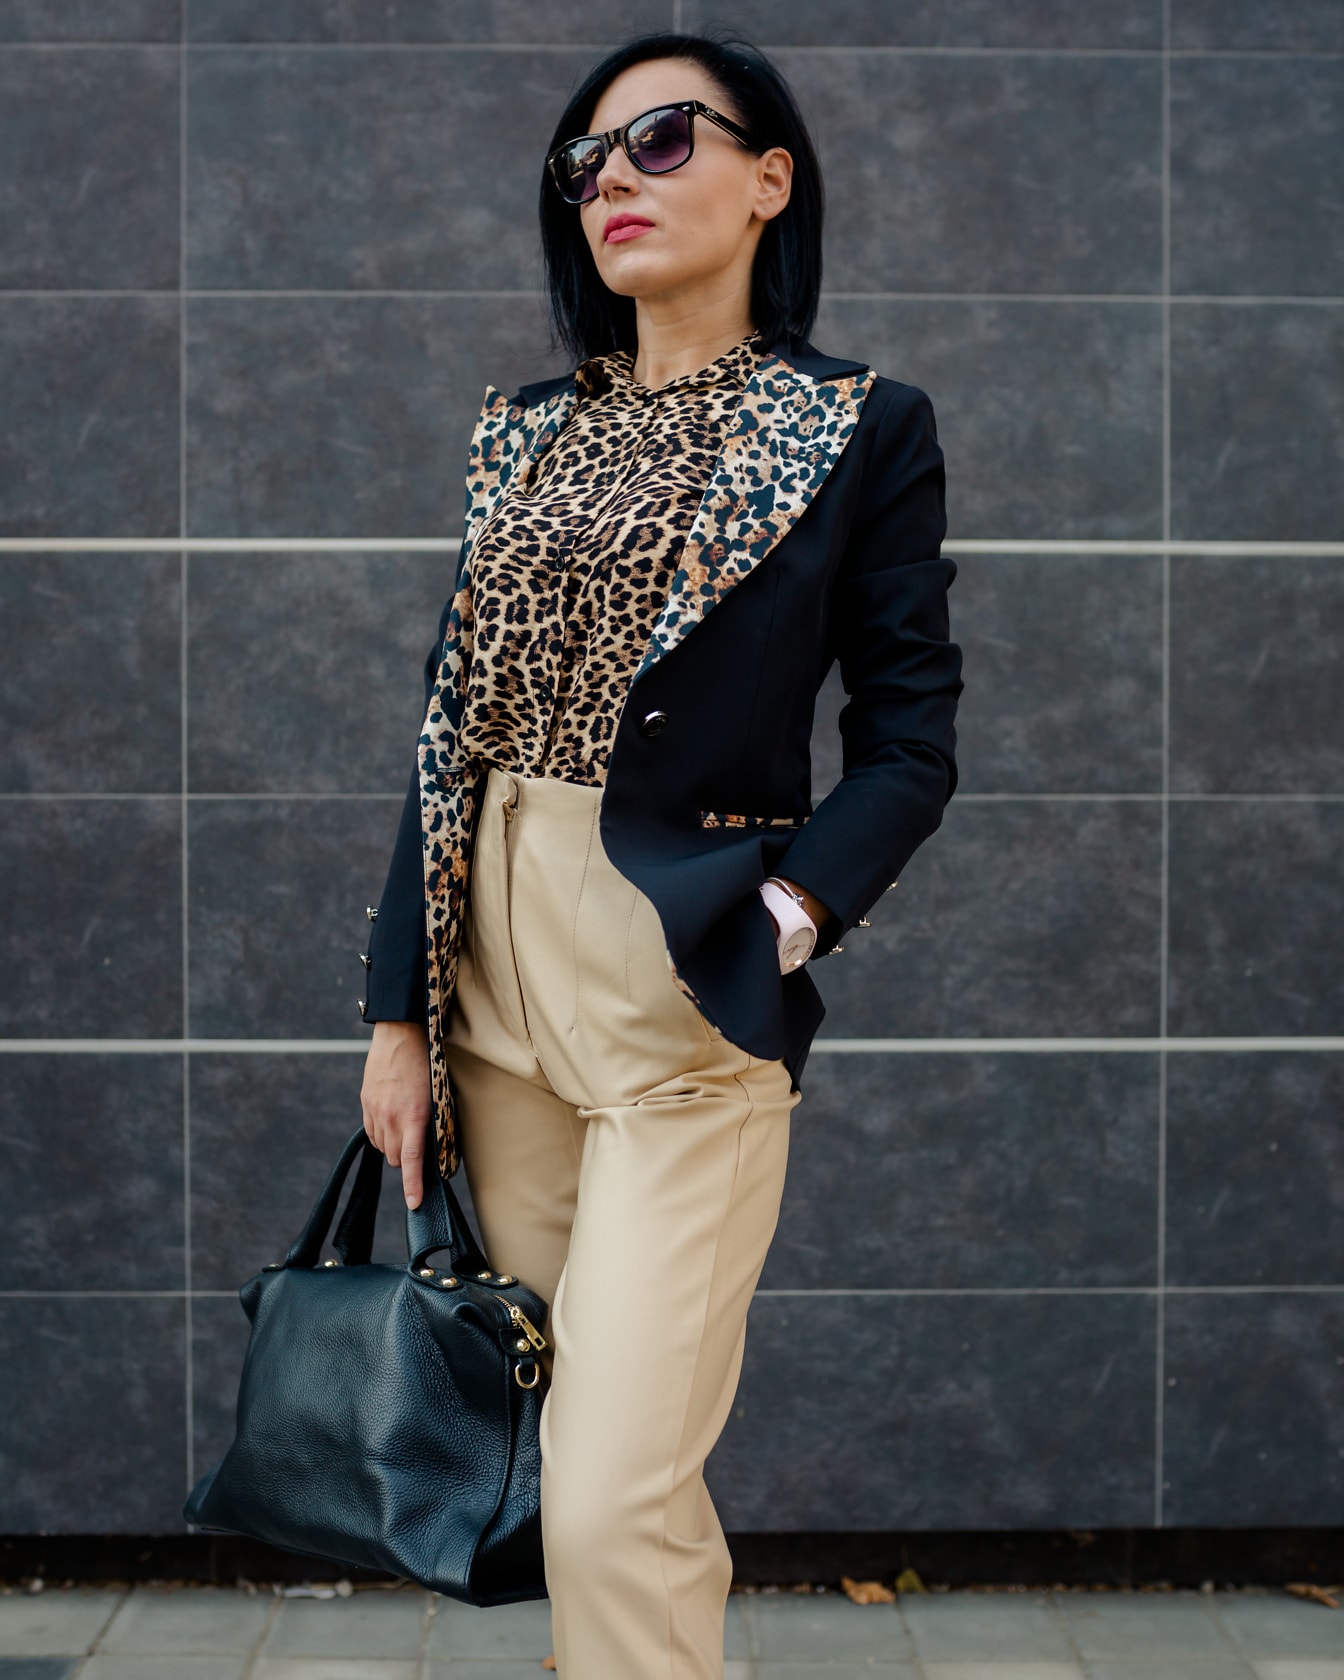 Красивая бизнес-леди в костюме с леопардовым принтом и ярких брюках позирует с черной кожаной сумкой